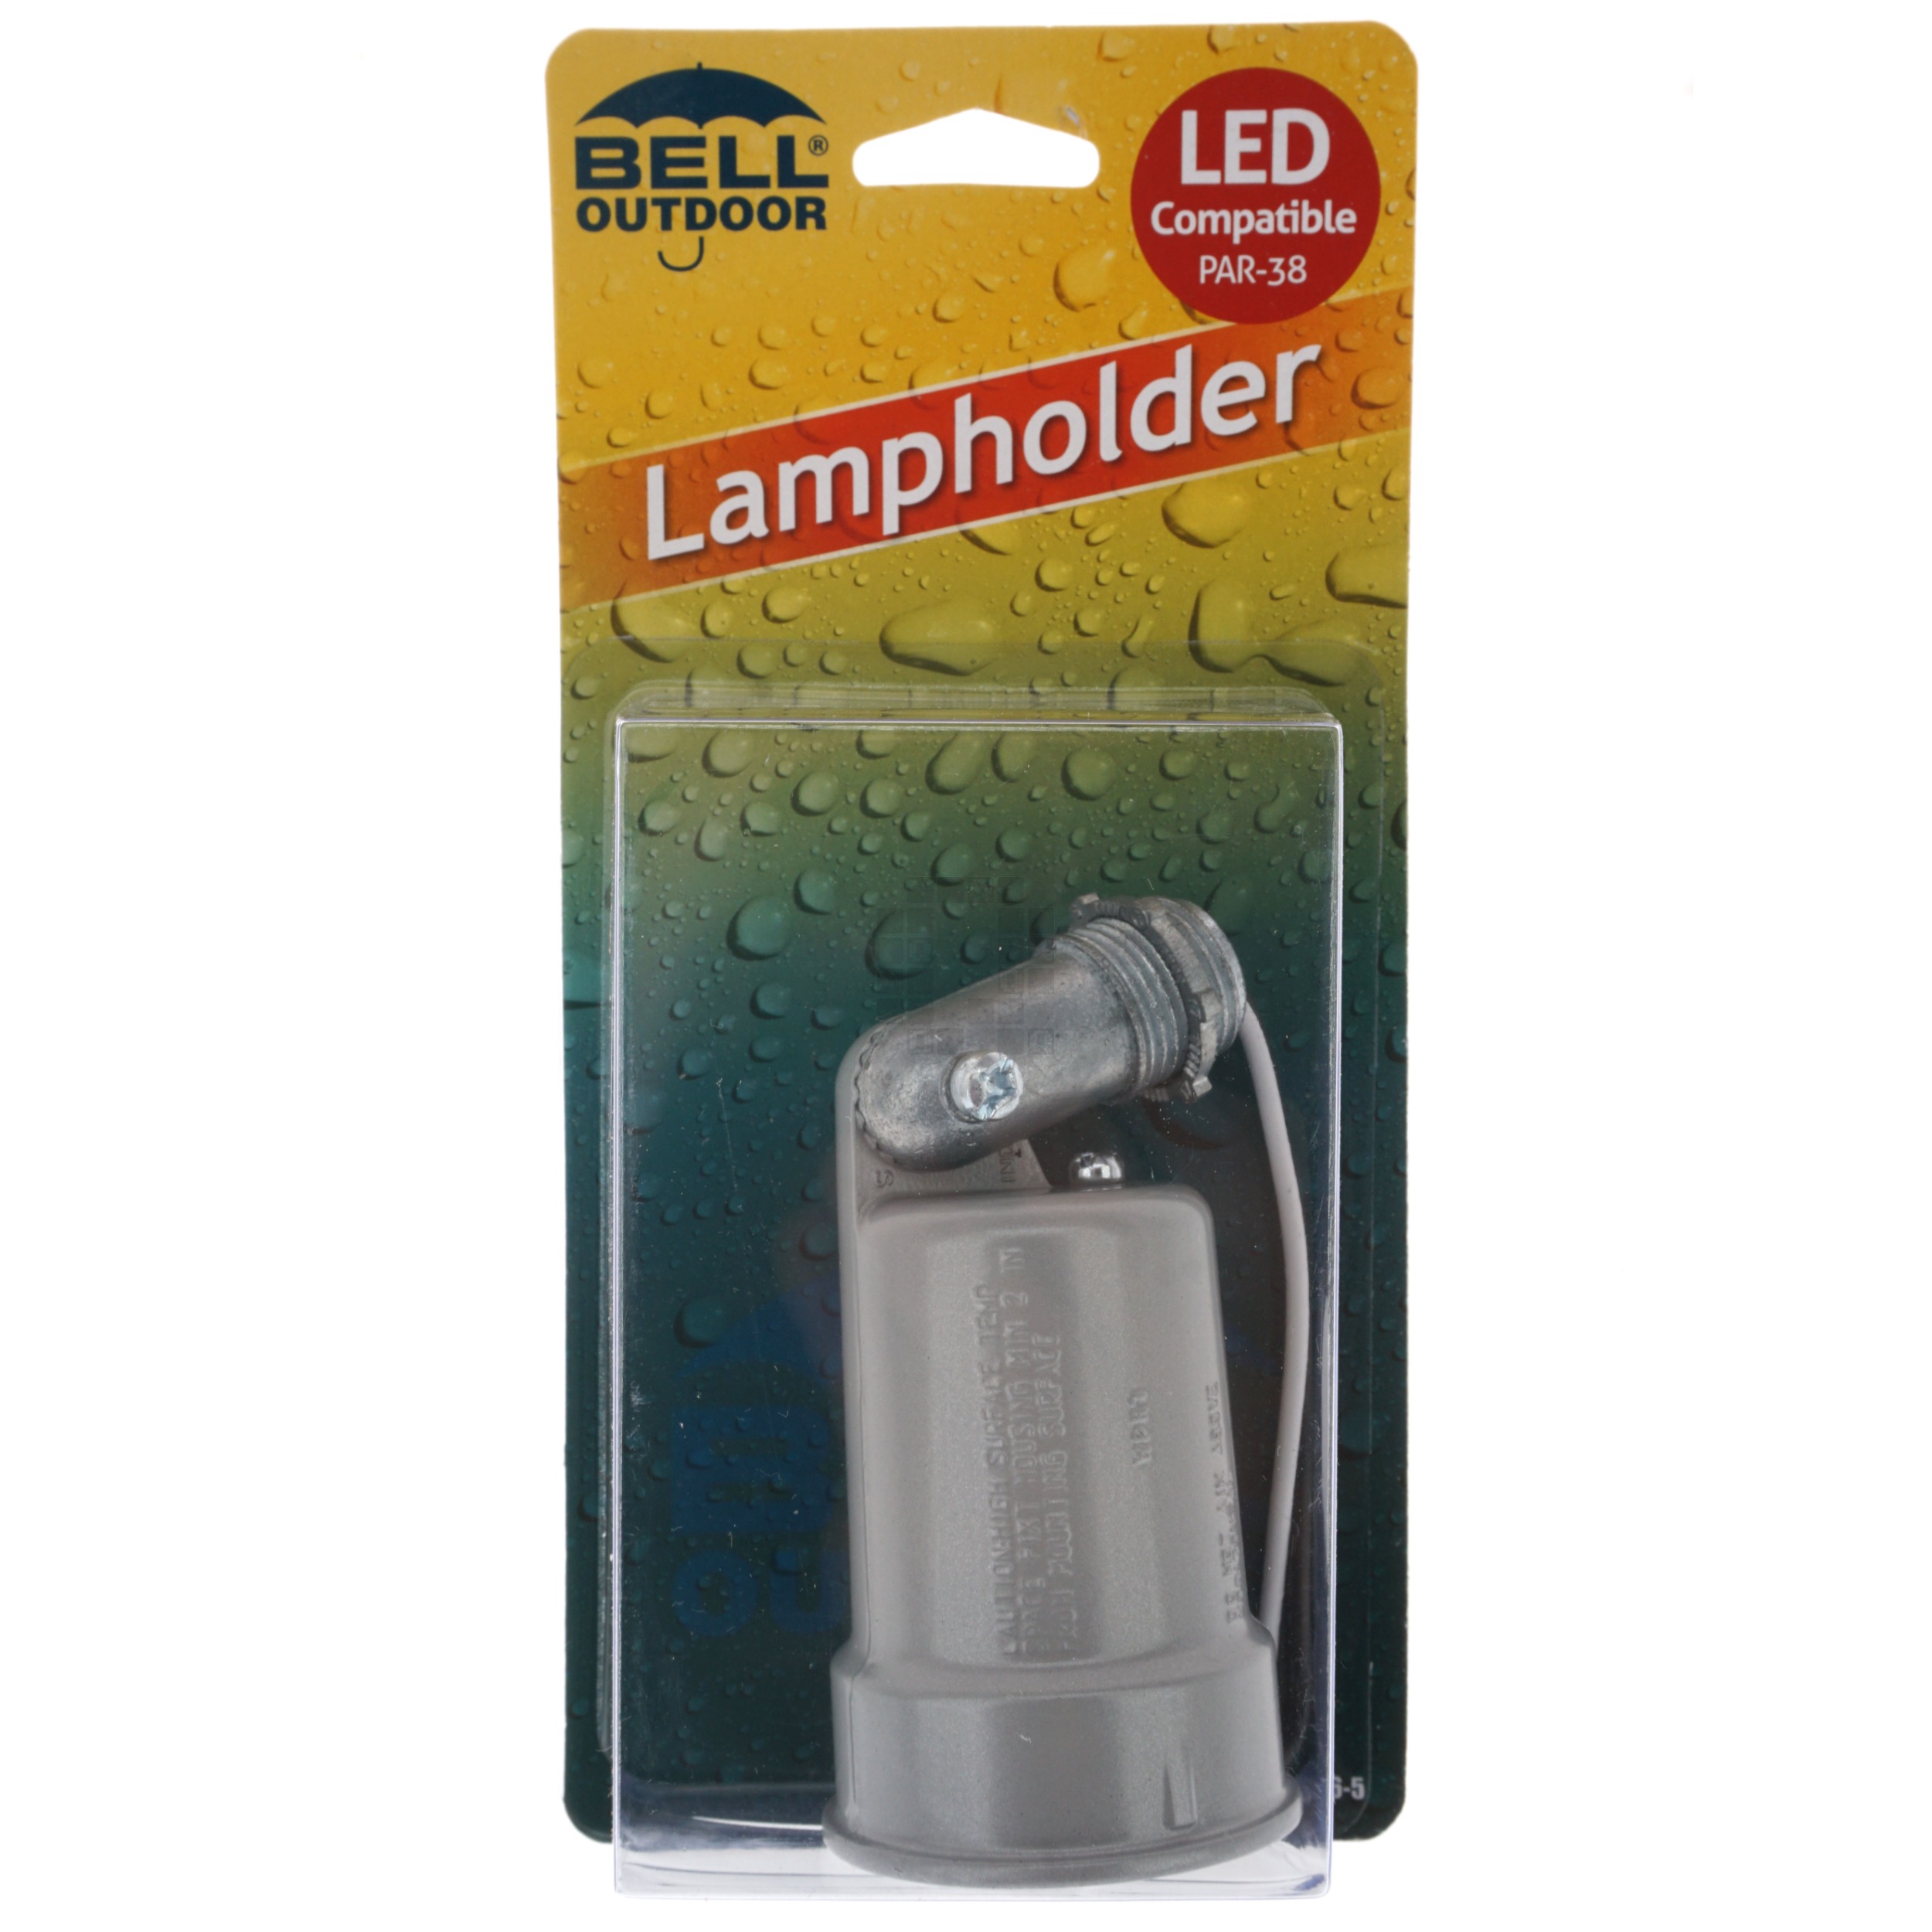 Bell Outdoor 5606-5 Weatherproof Lampholder, Gray PAR-38 150W Max